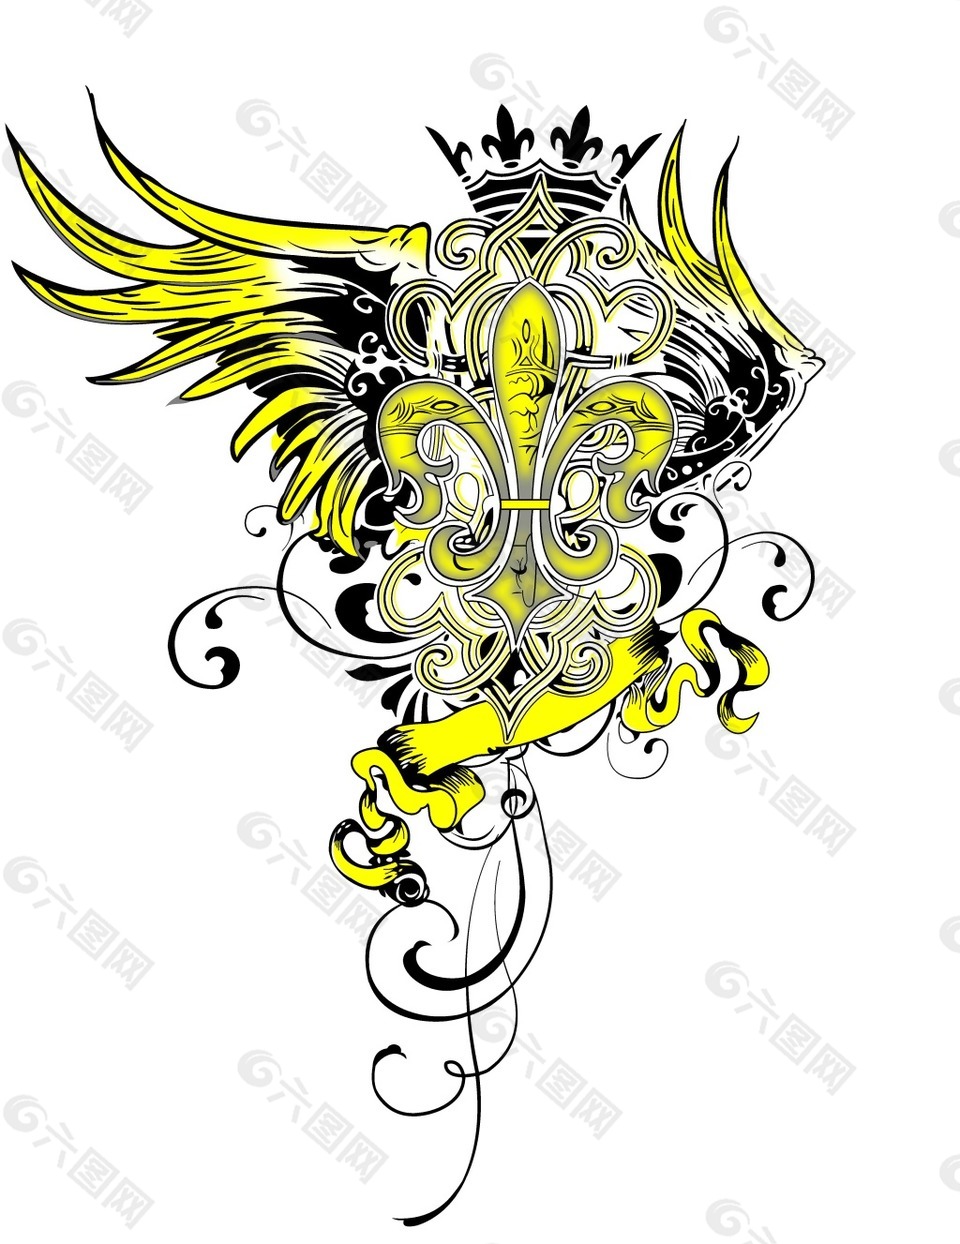 皇冠与鹰装饰素材